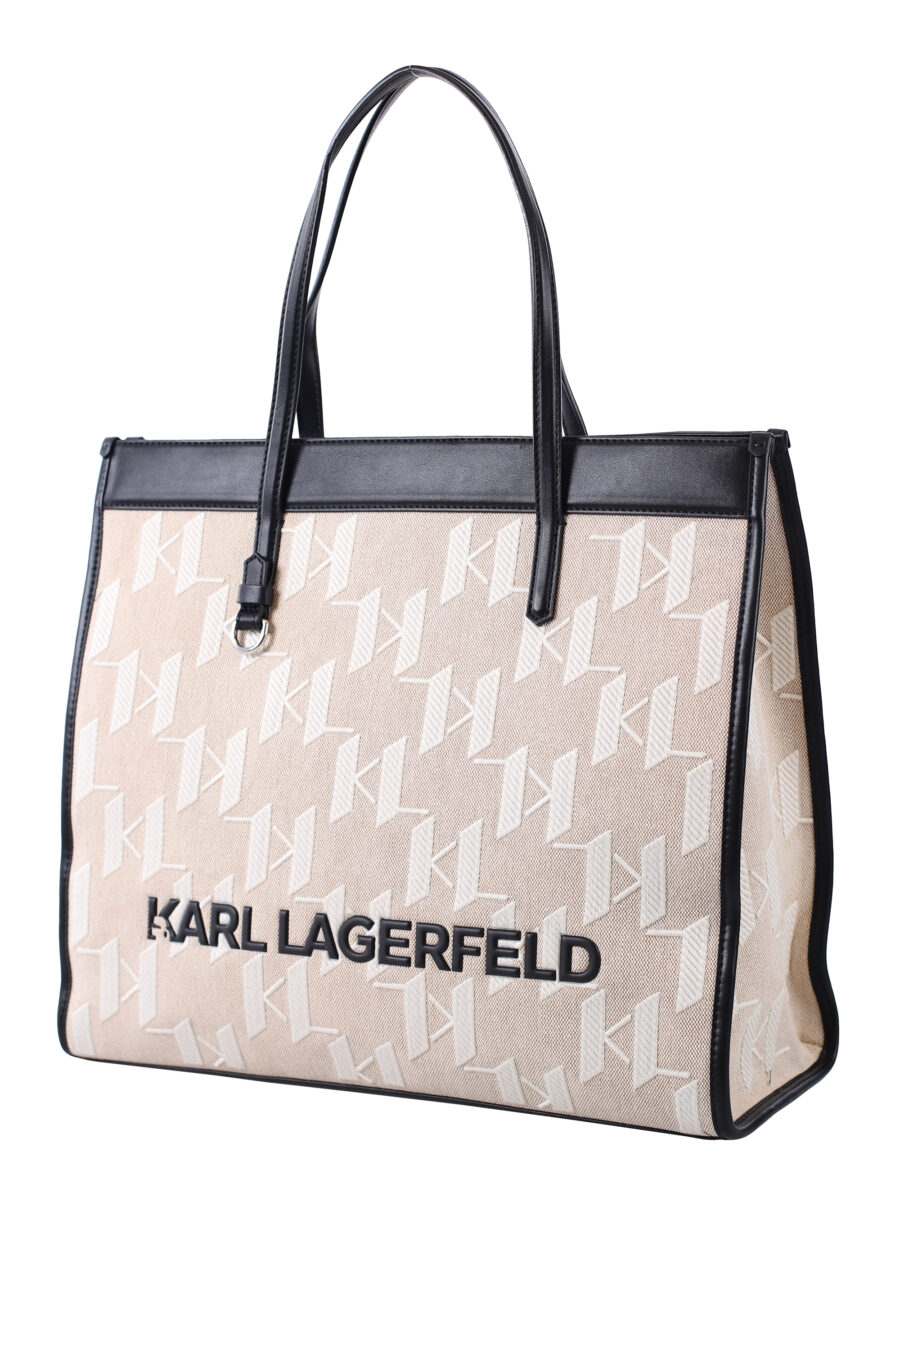 Tote bag begie con con monograma blanco y detalles negros - IMG 1604